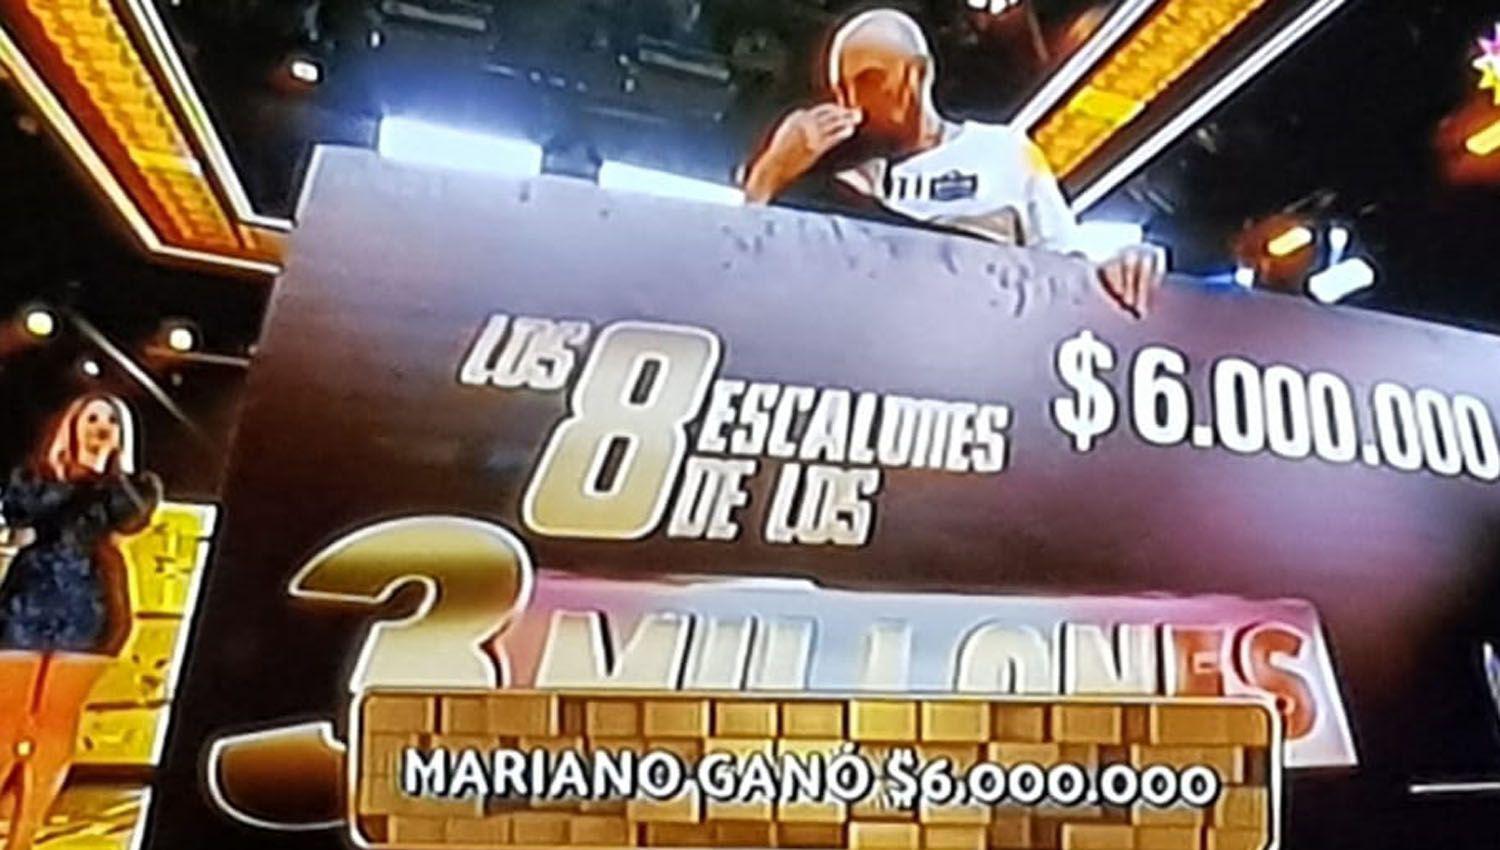 Mariano ganoacute 6 millones en Los 8 Escalones dinero que destina para tratar a su hija contra el caacutencer